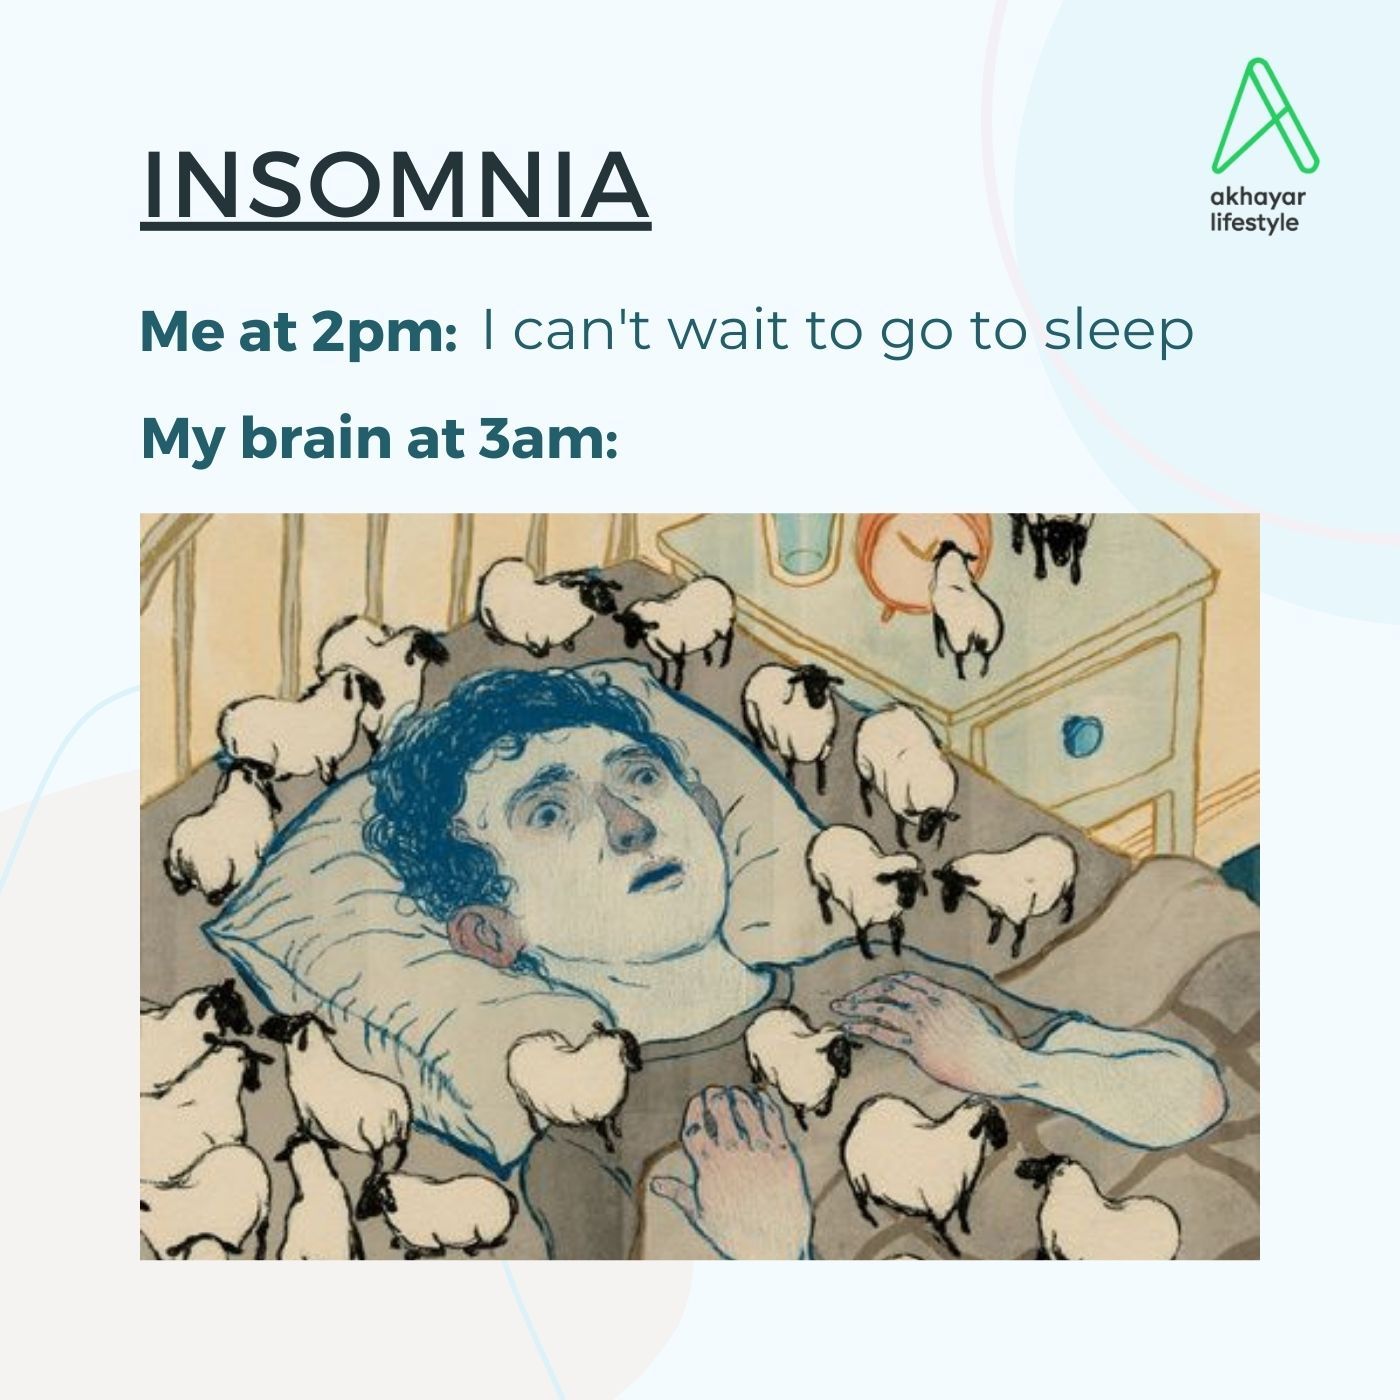 " ညဘက်အိပ်မပျော်တဲ့ရောဂါ (Insomnia) နဲ့ပတ်သတ်ပြီး ဆောင်ရန်၊ရှောင်ရန် အချက်များ "